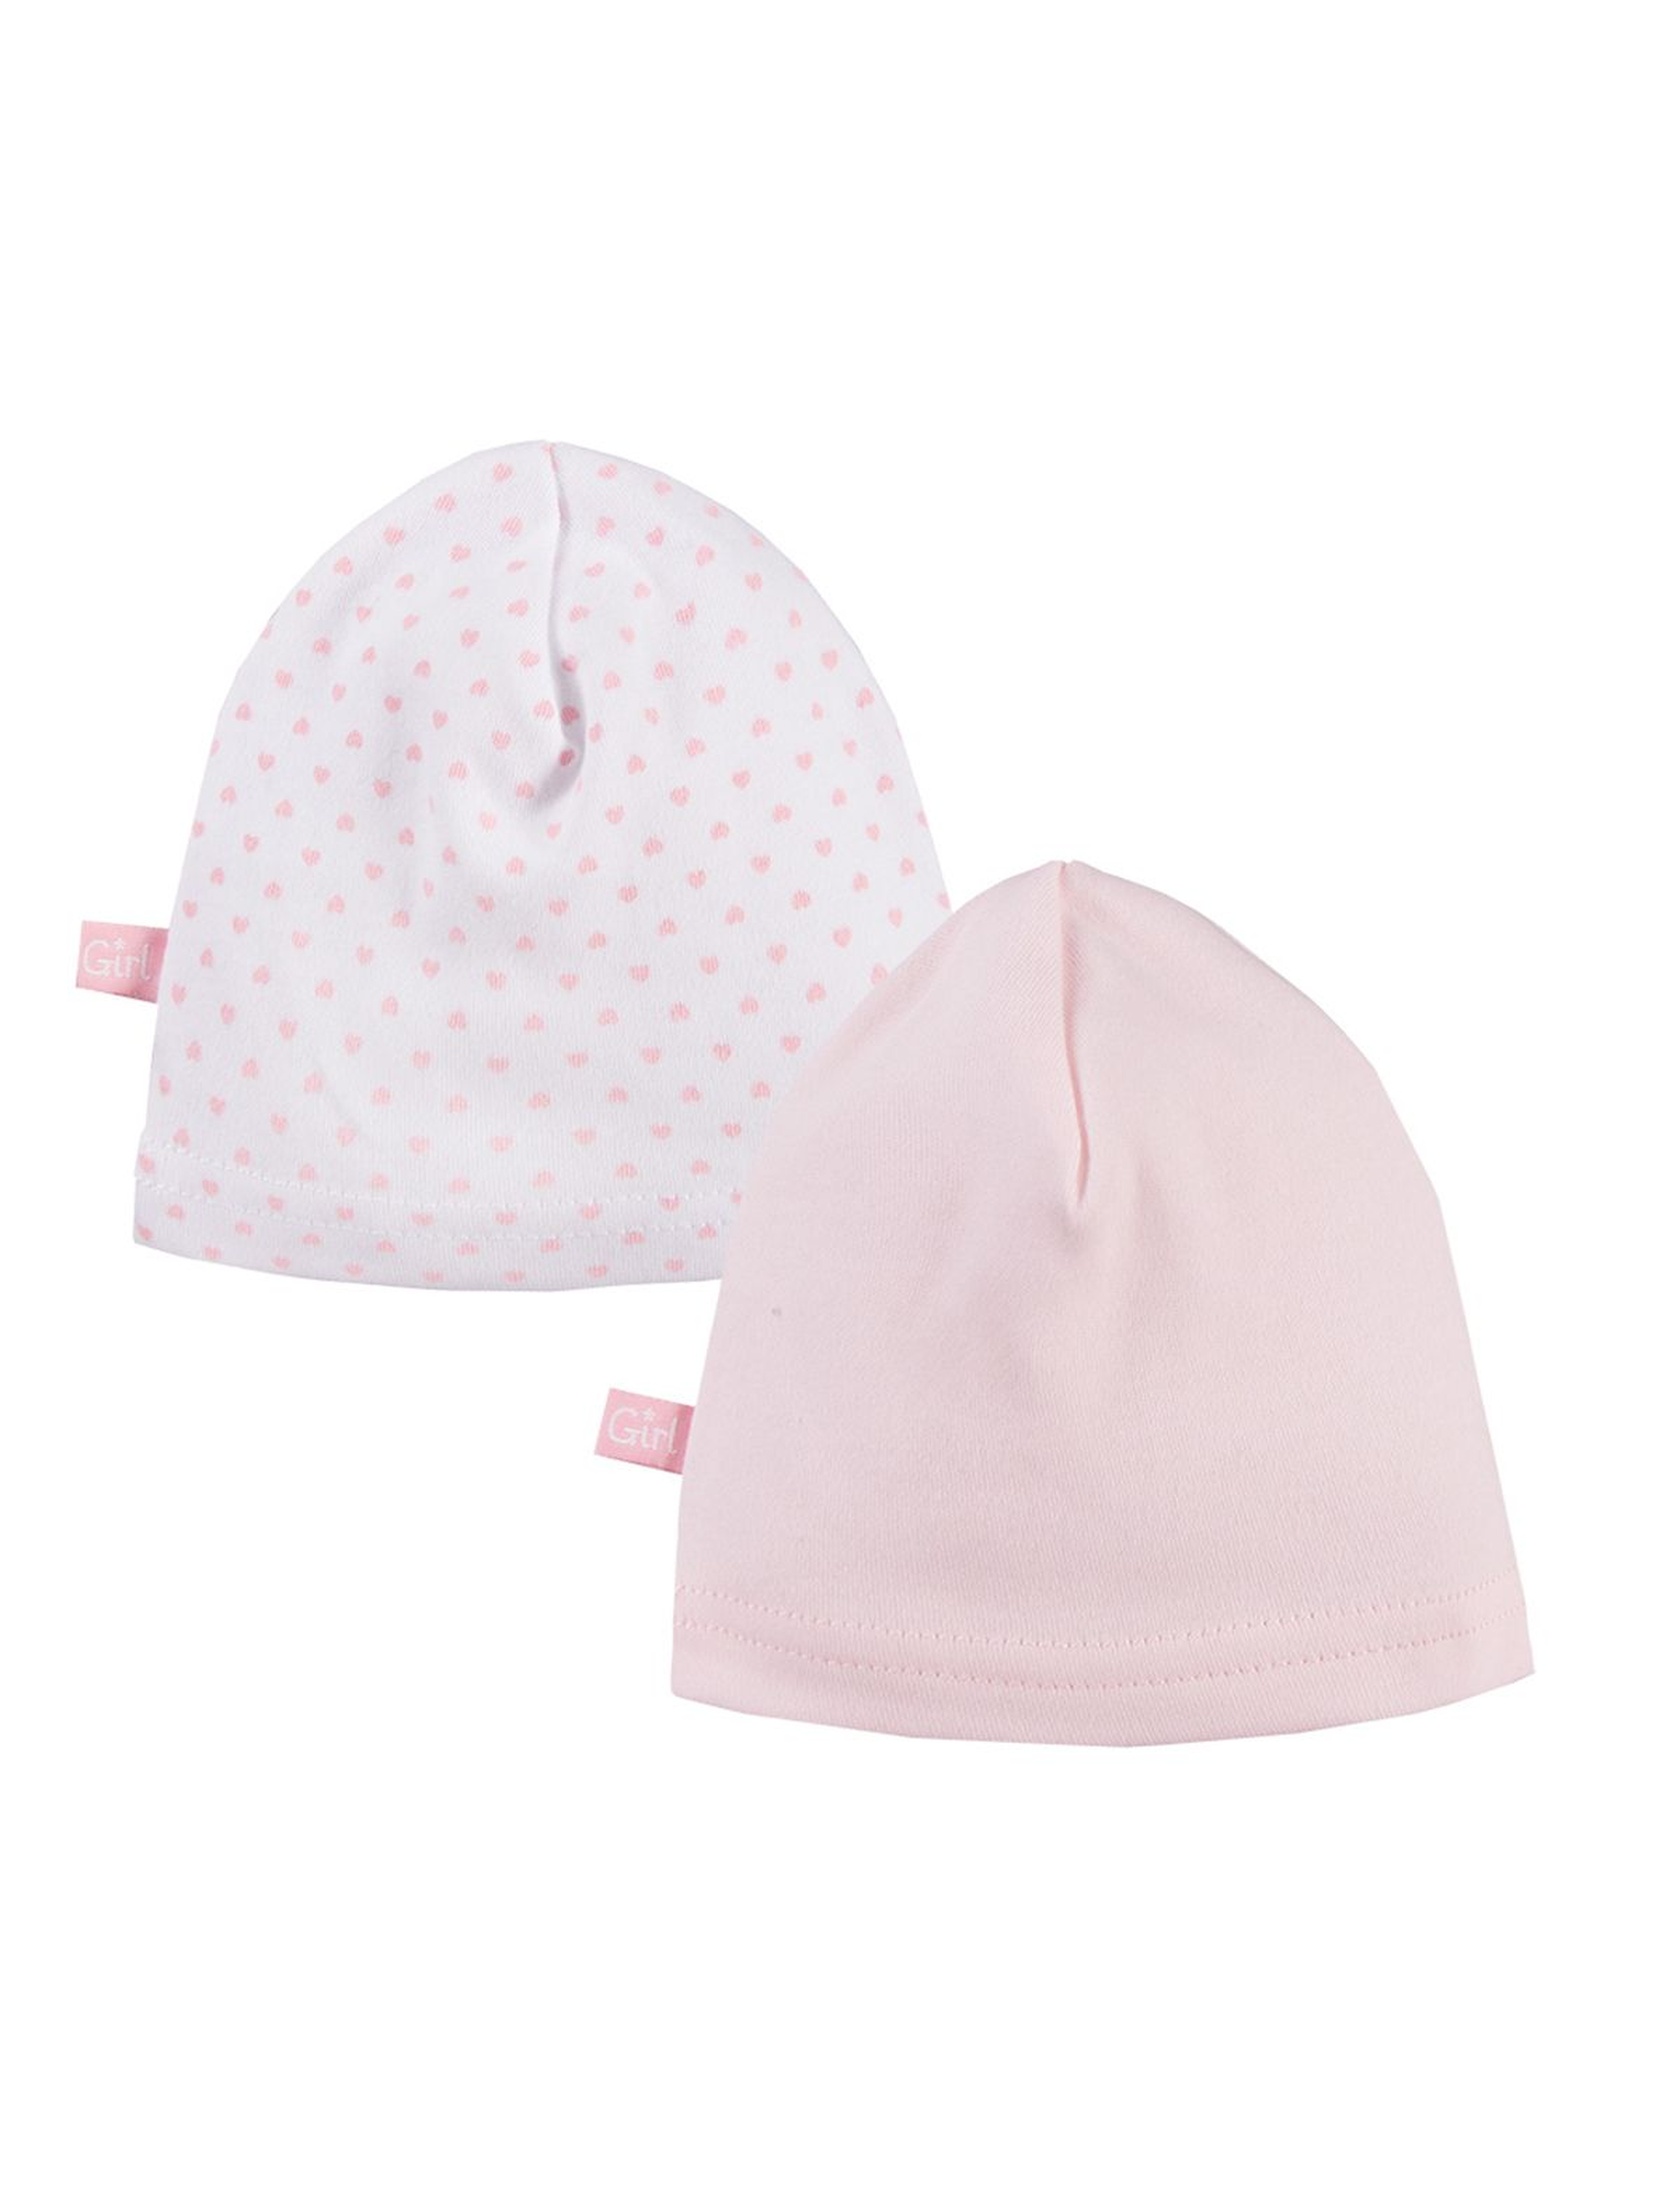 Bawełniane czapki niemowlęce 2pak - różowe